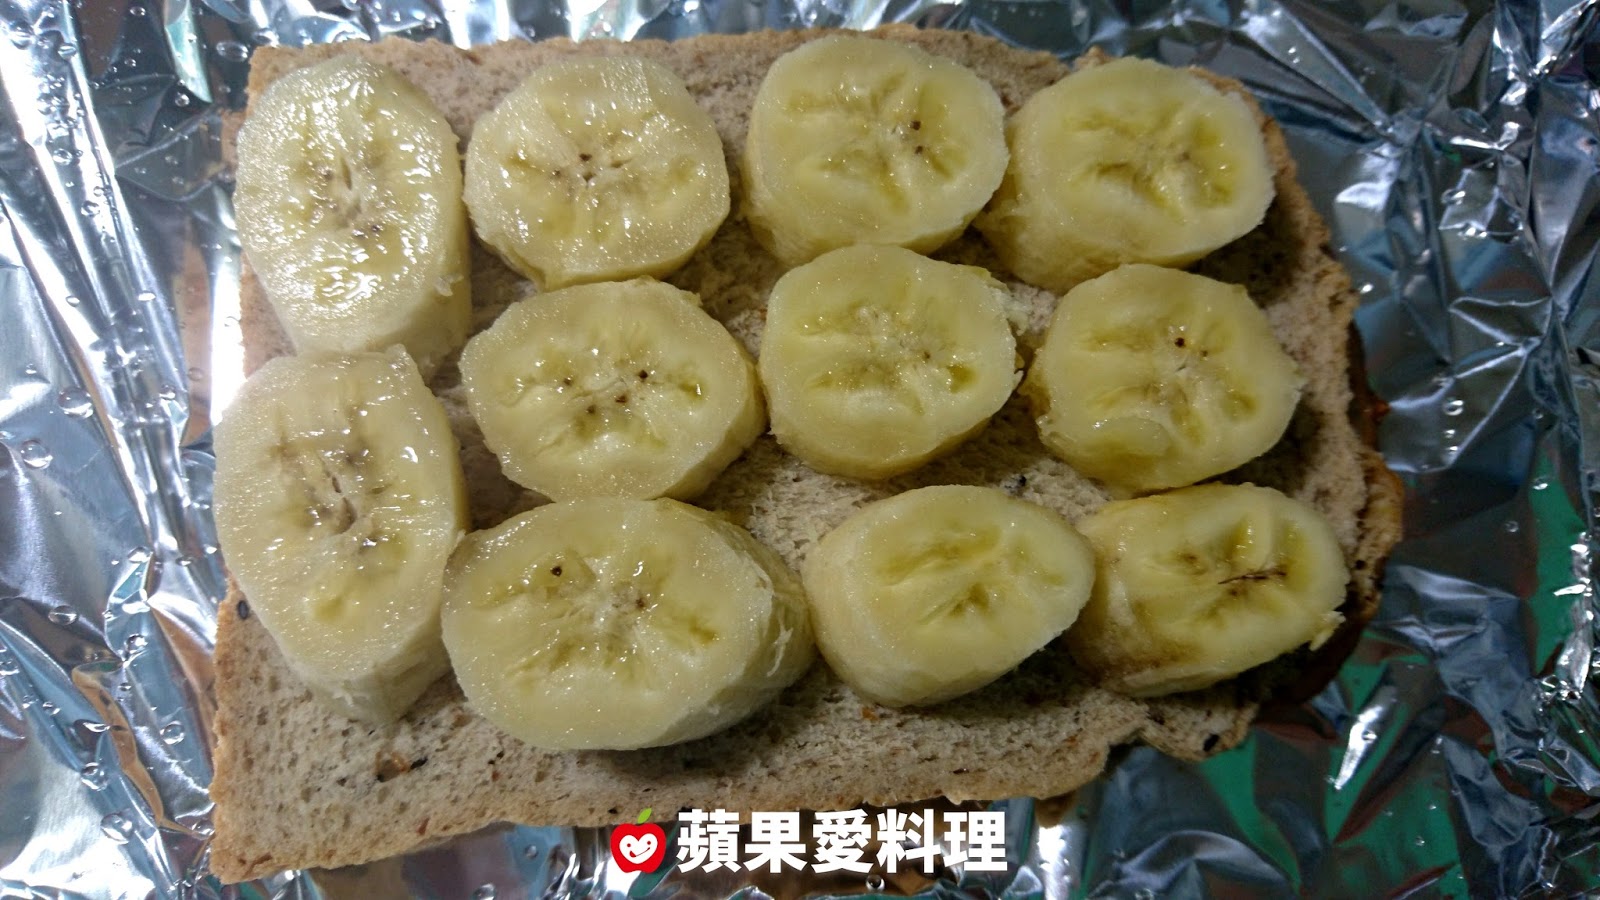 【食譜】香蕉花生醬土司(1):www.ytower.com.tw